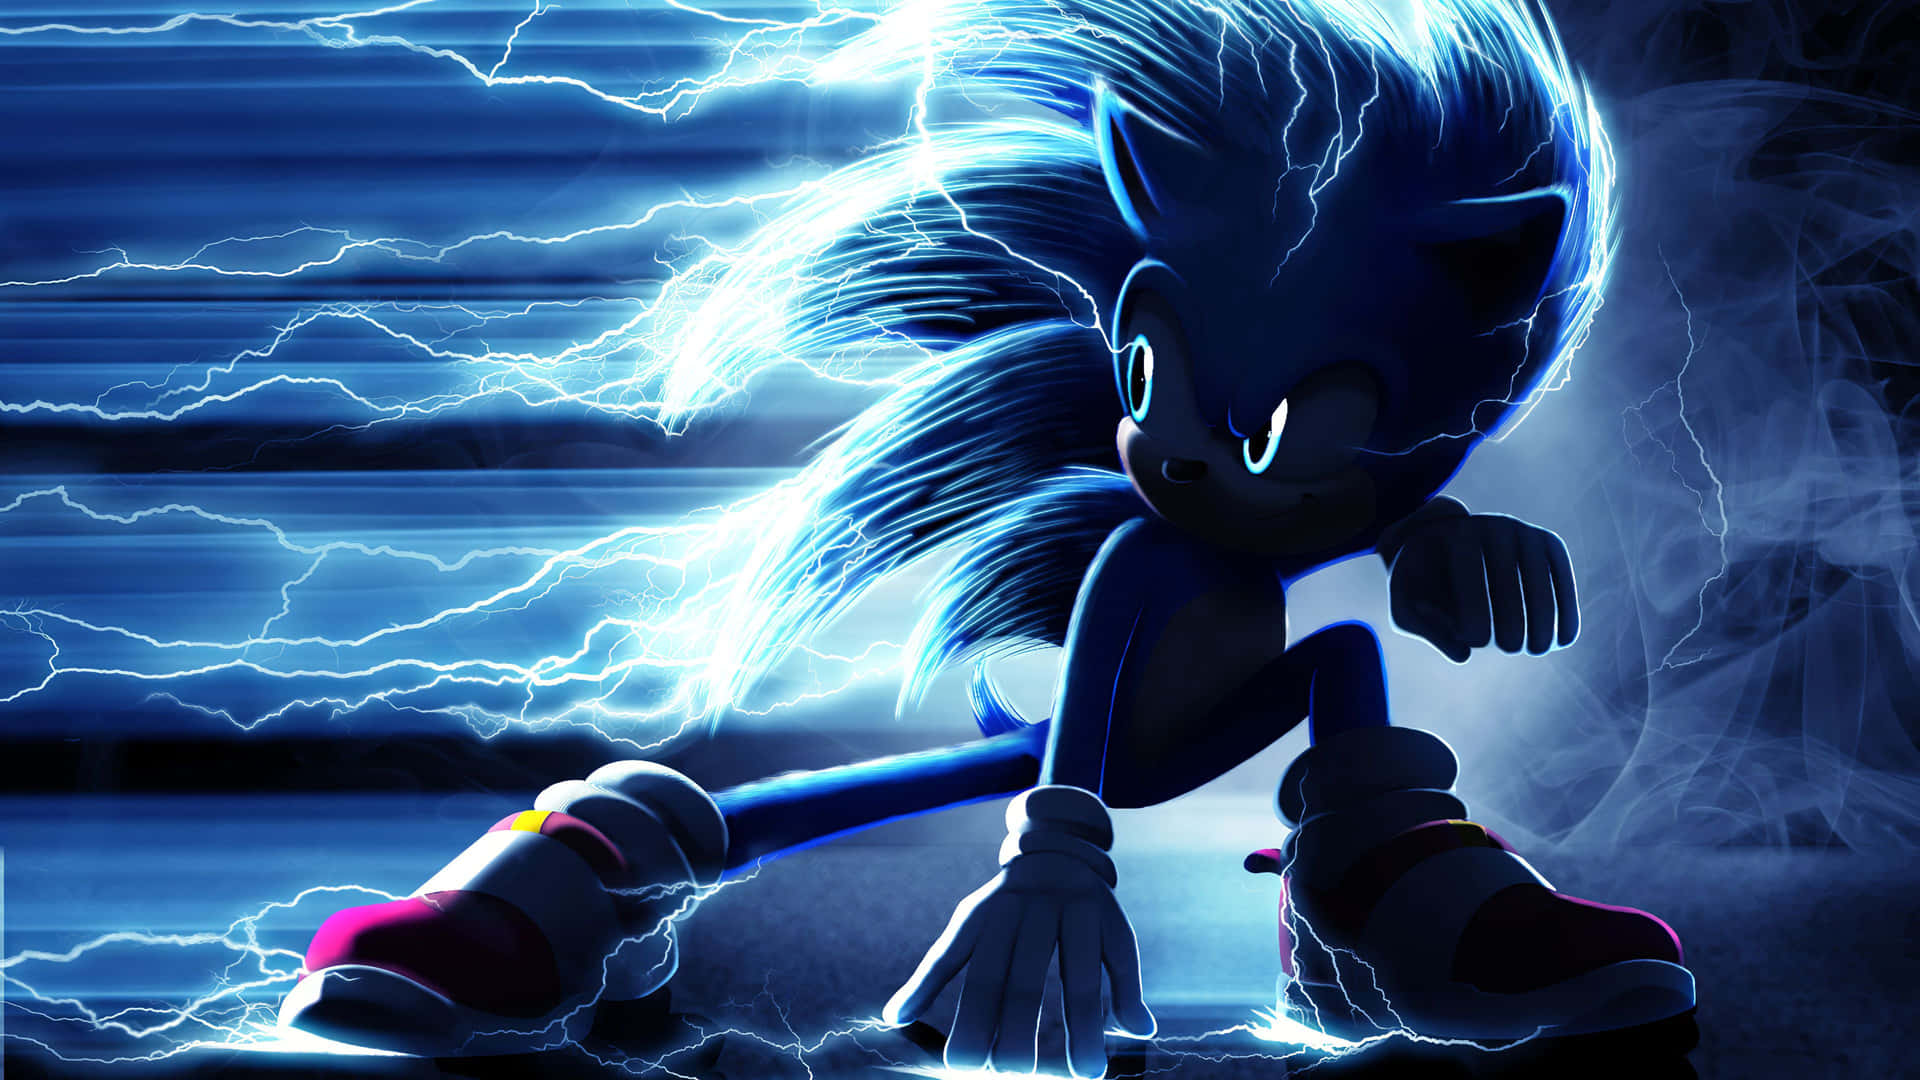 Tag kontrol over Sonic The Hedgehog og hans superkræfter i 4K opløsning Wallpaper